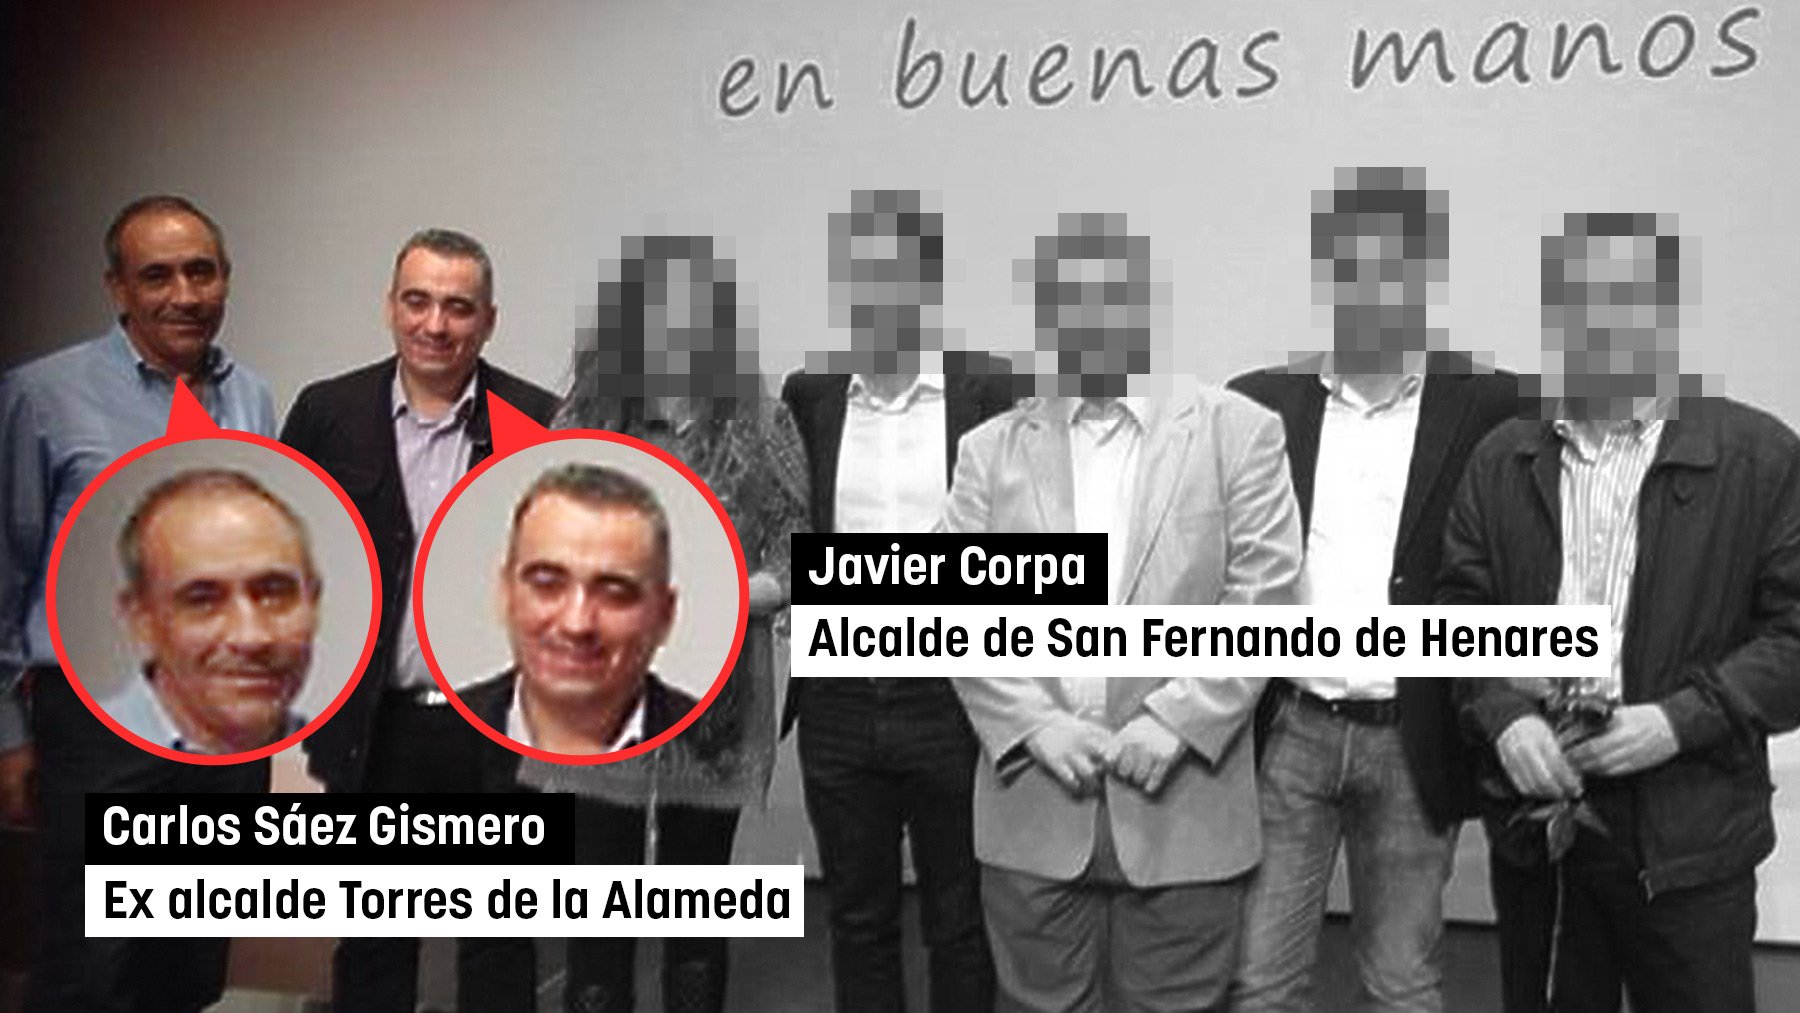 Carlos Sáez ex alcalde Torres de la Alameda y Javier Corpa, alcalde de San Fernando de Henares.